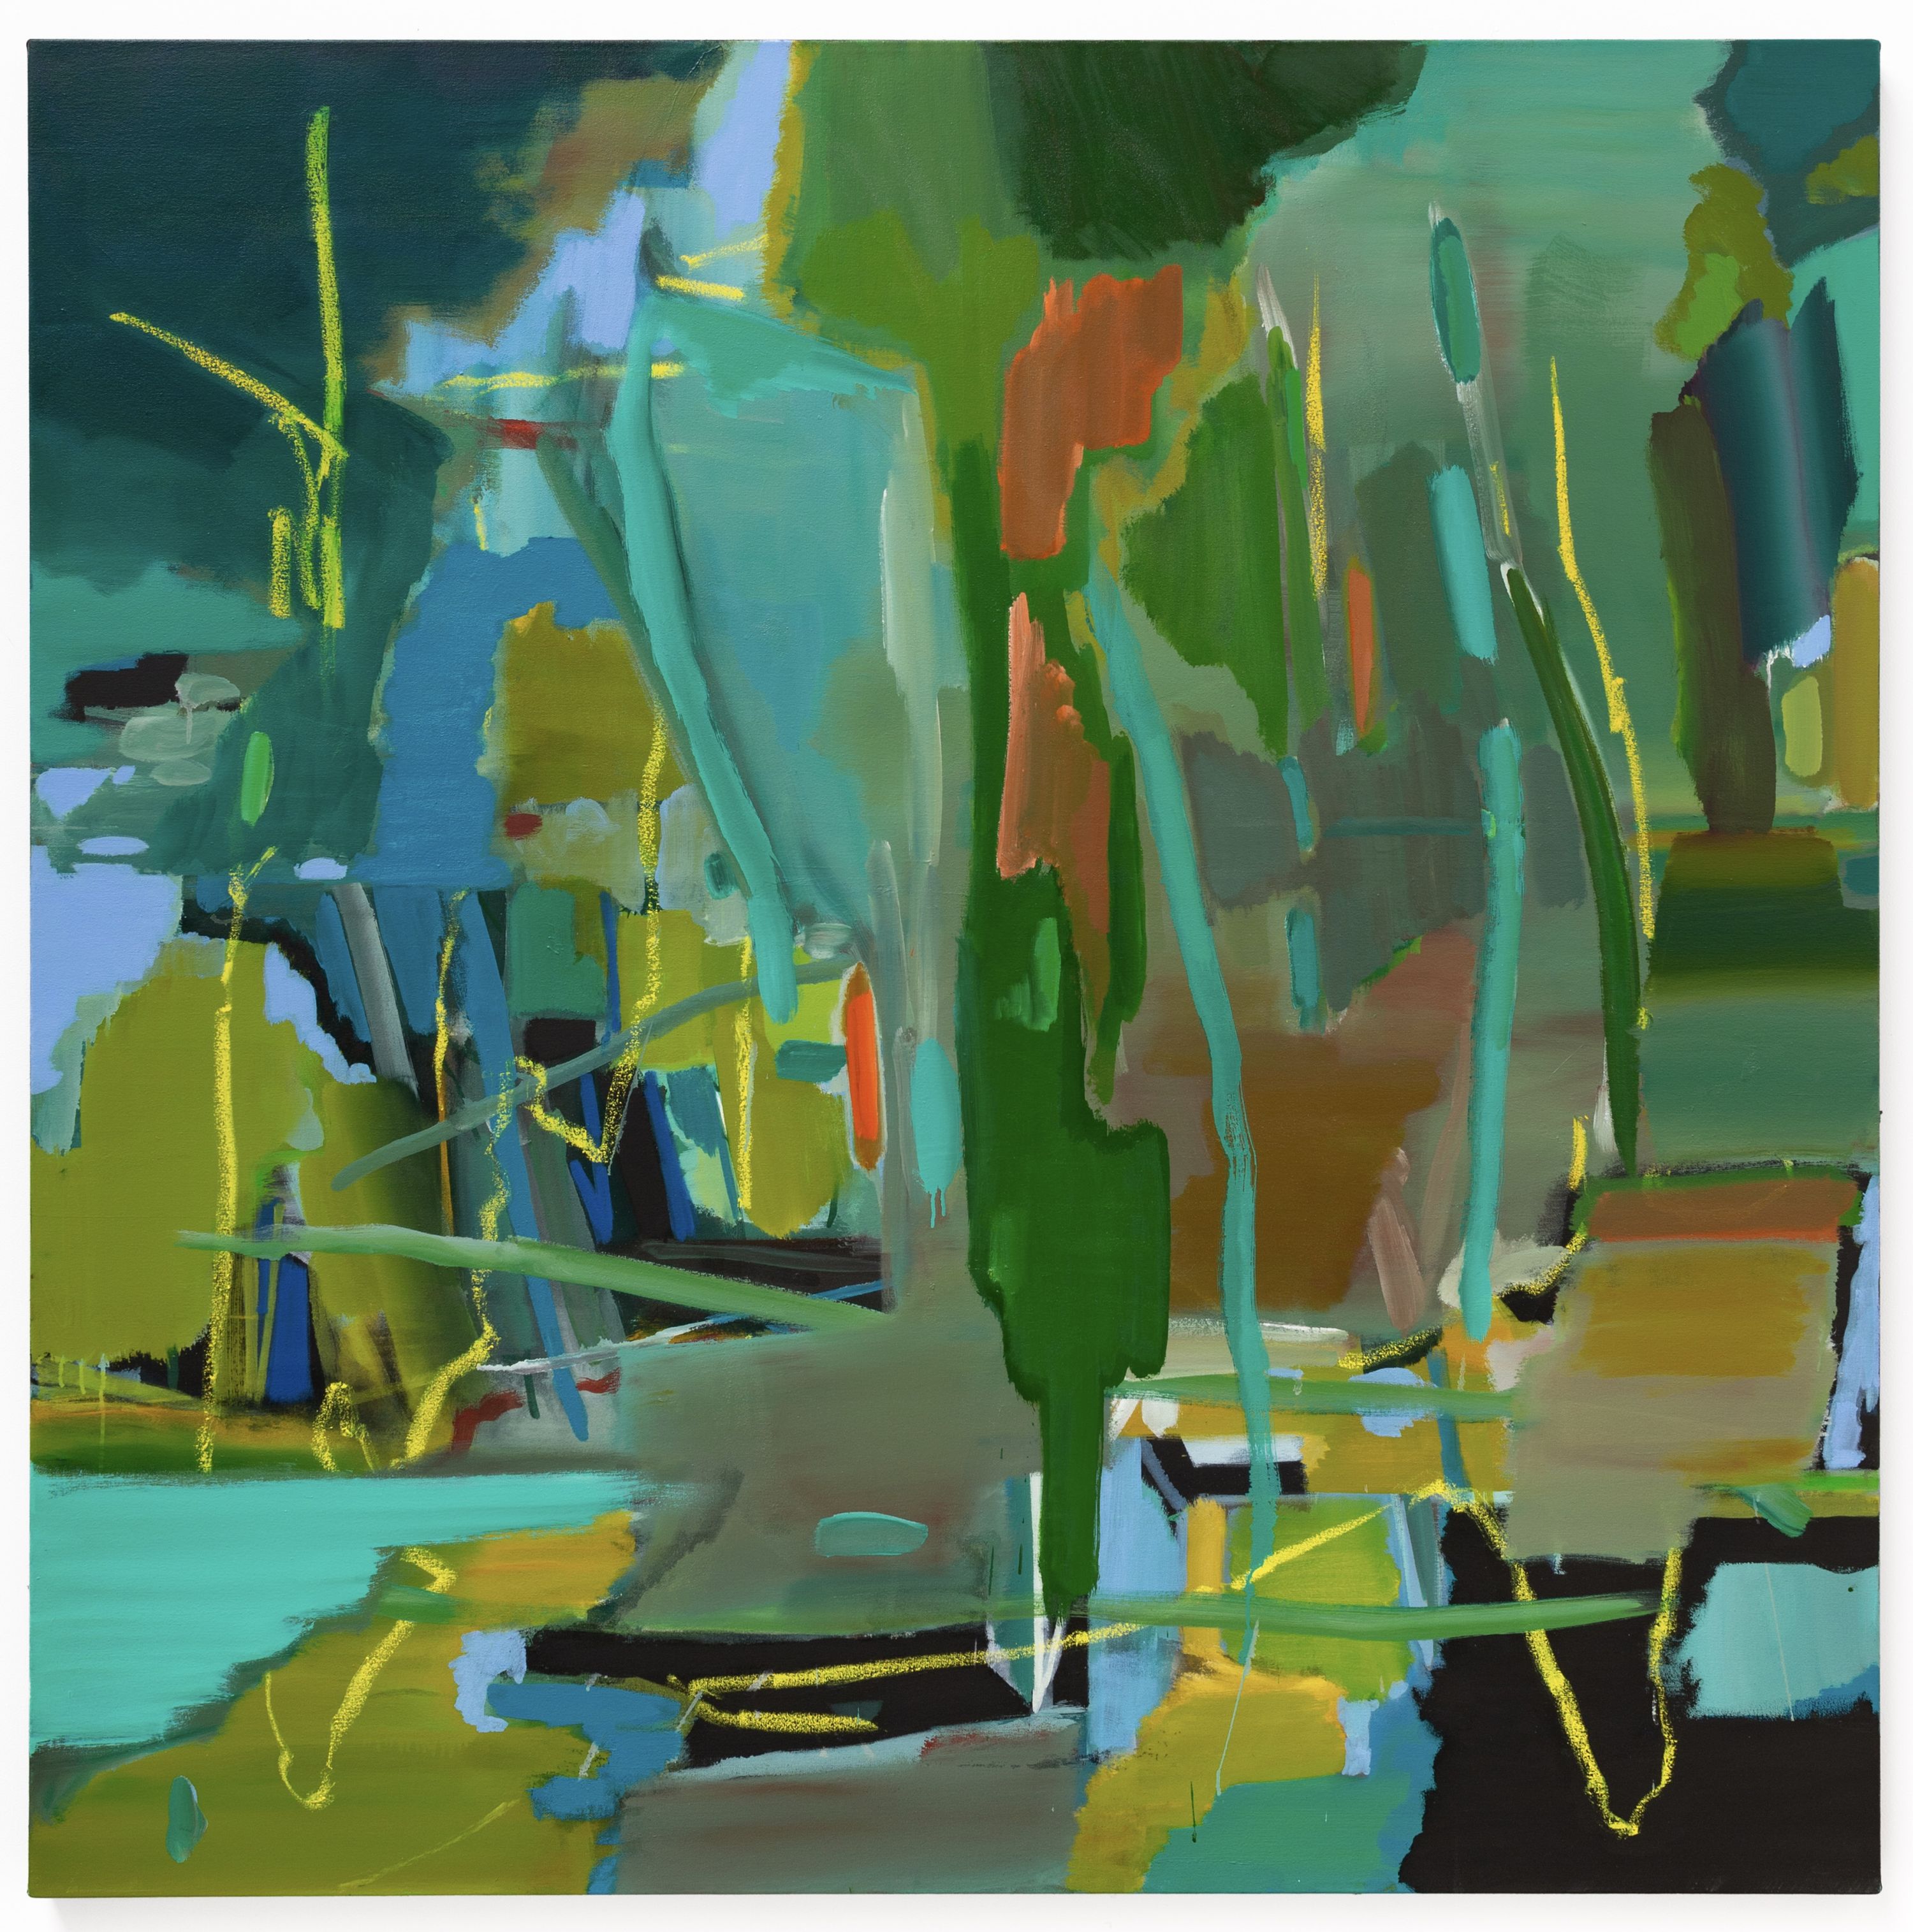 Mark Wright, (b.1962), Landfall, 2016, oil and acrylic on canvas, 152 x 152 cm